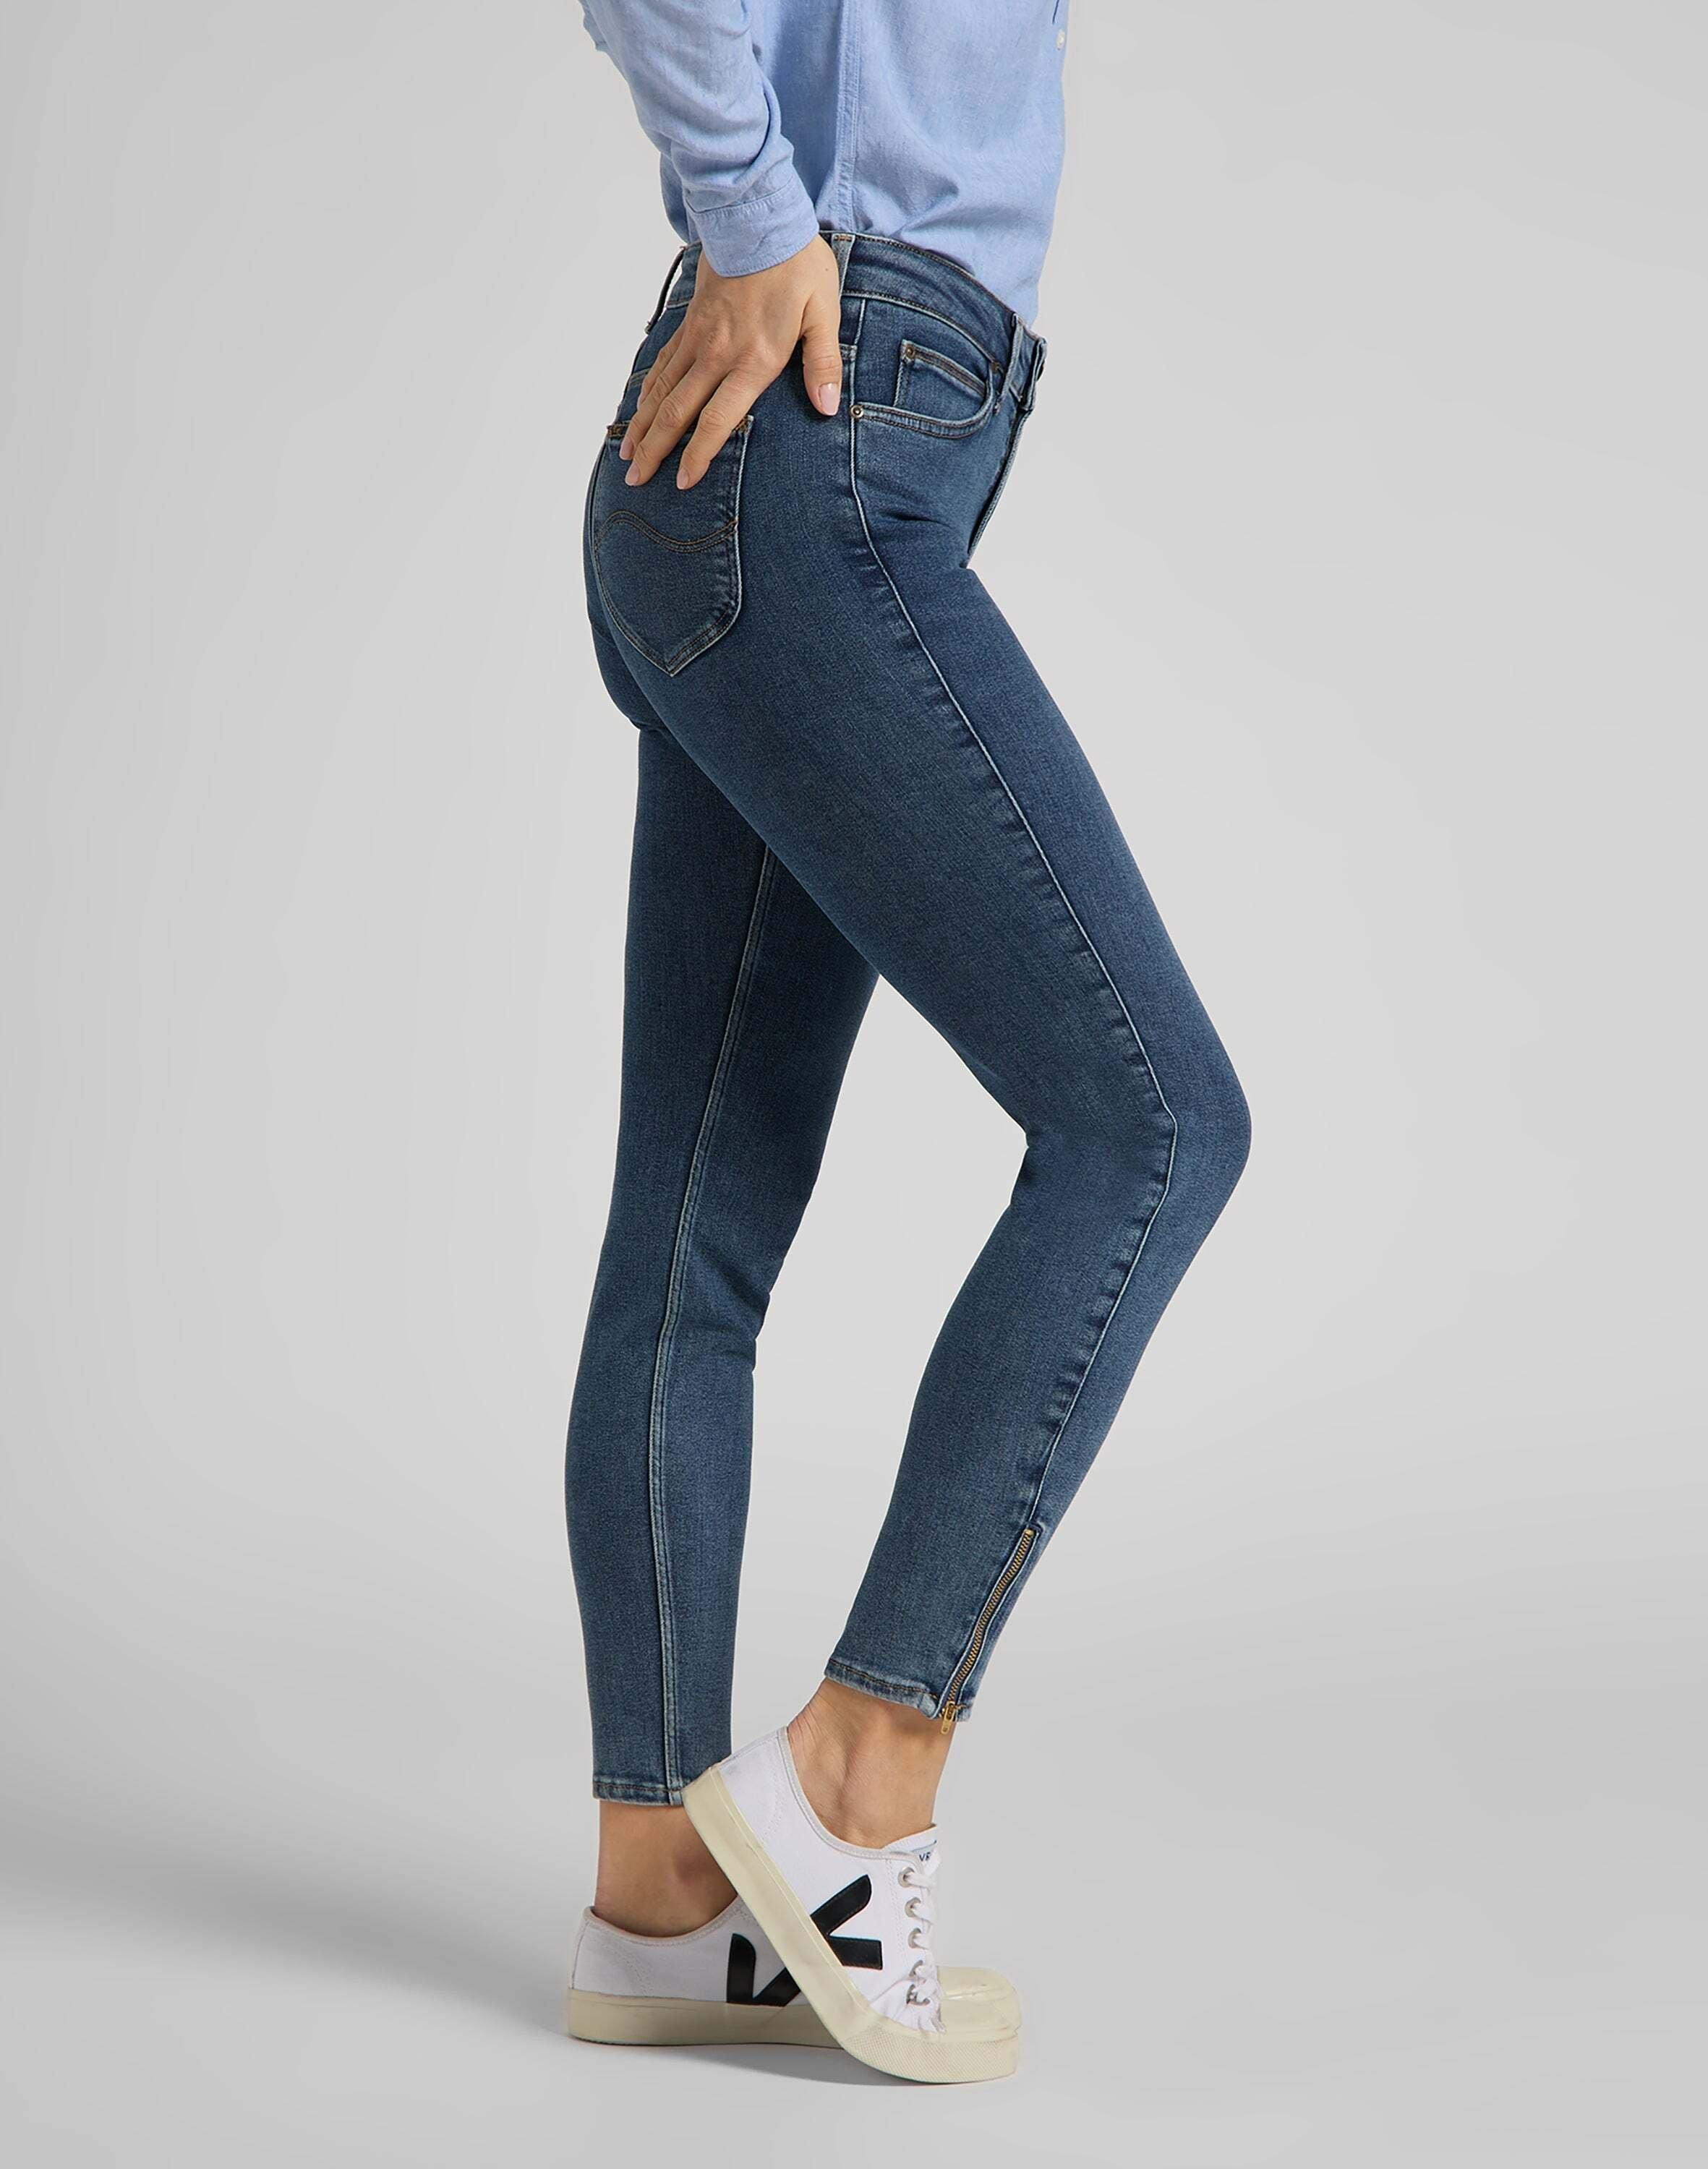 Lee  Jeans Skinny Fit Scarlett High Zip 